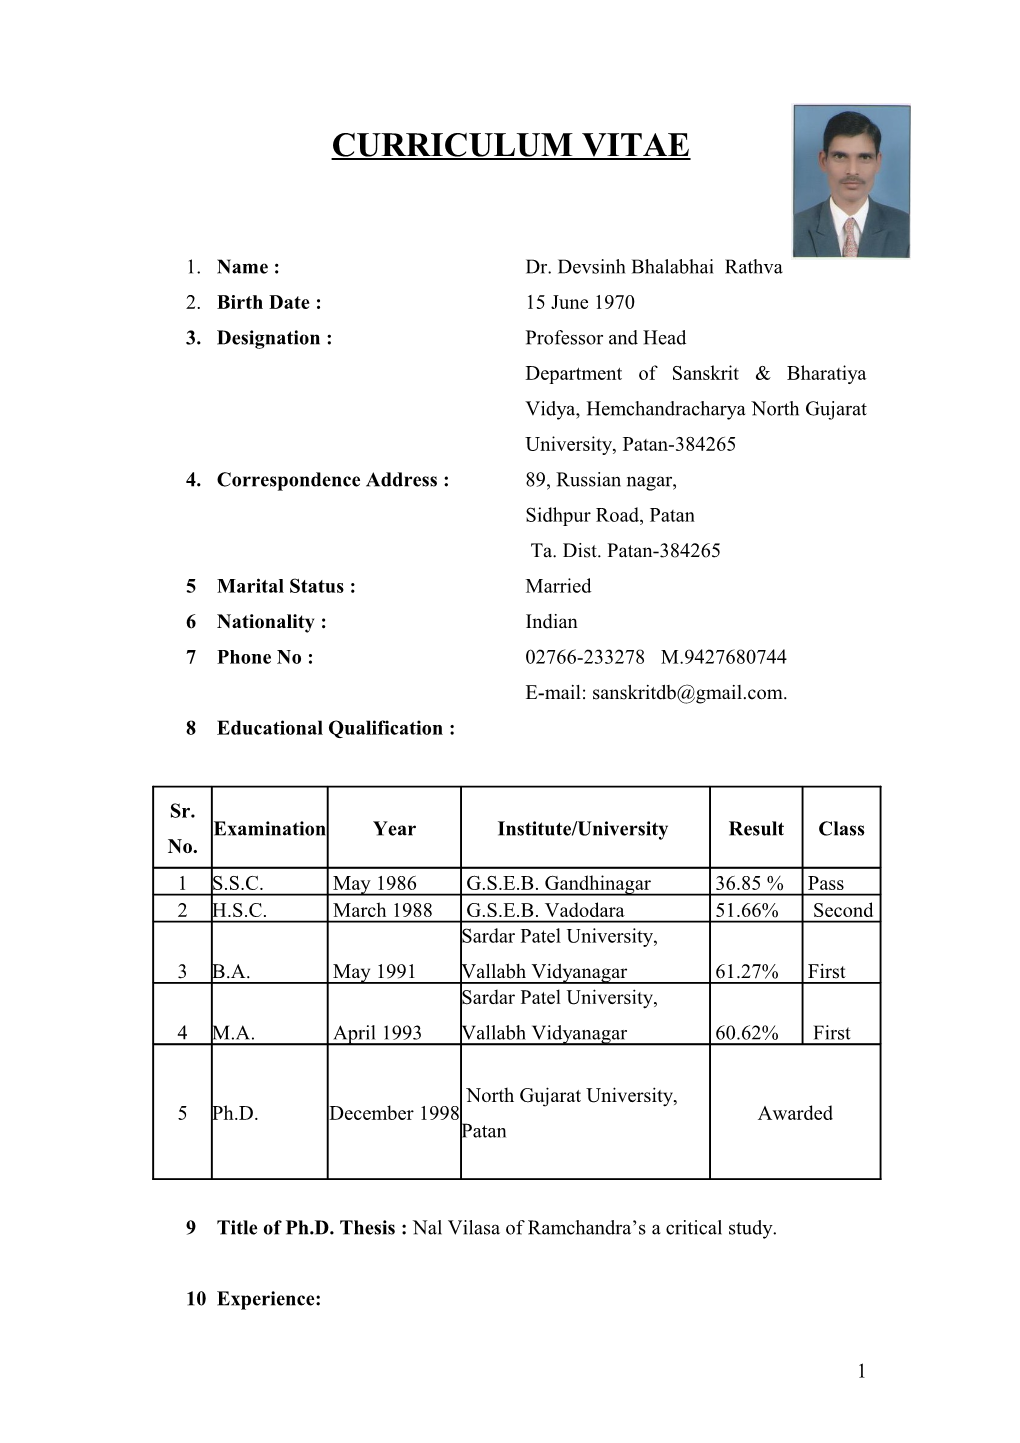 1. Name : Dr. Devsinh Bhalabhai Rathva